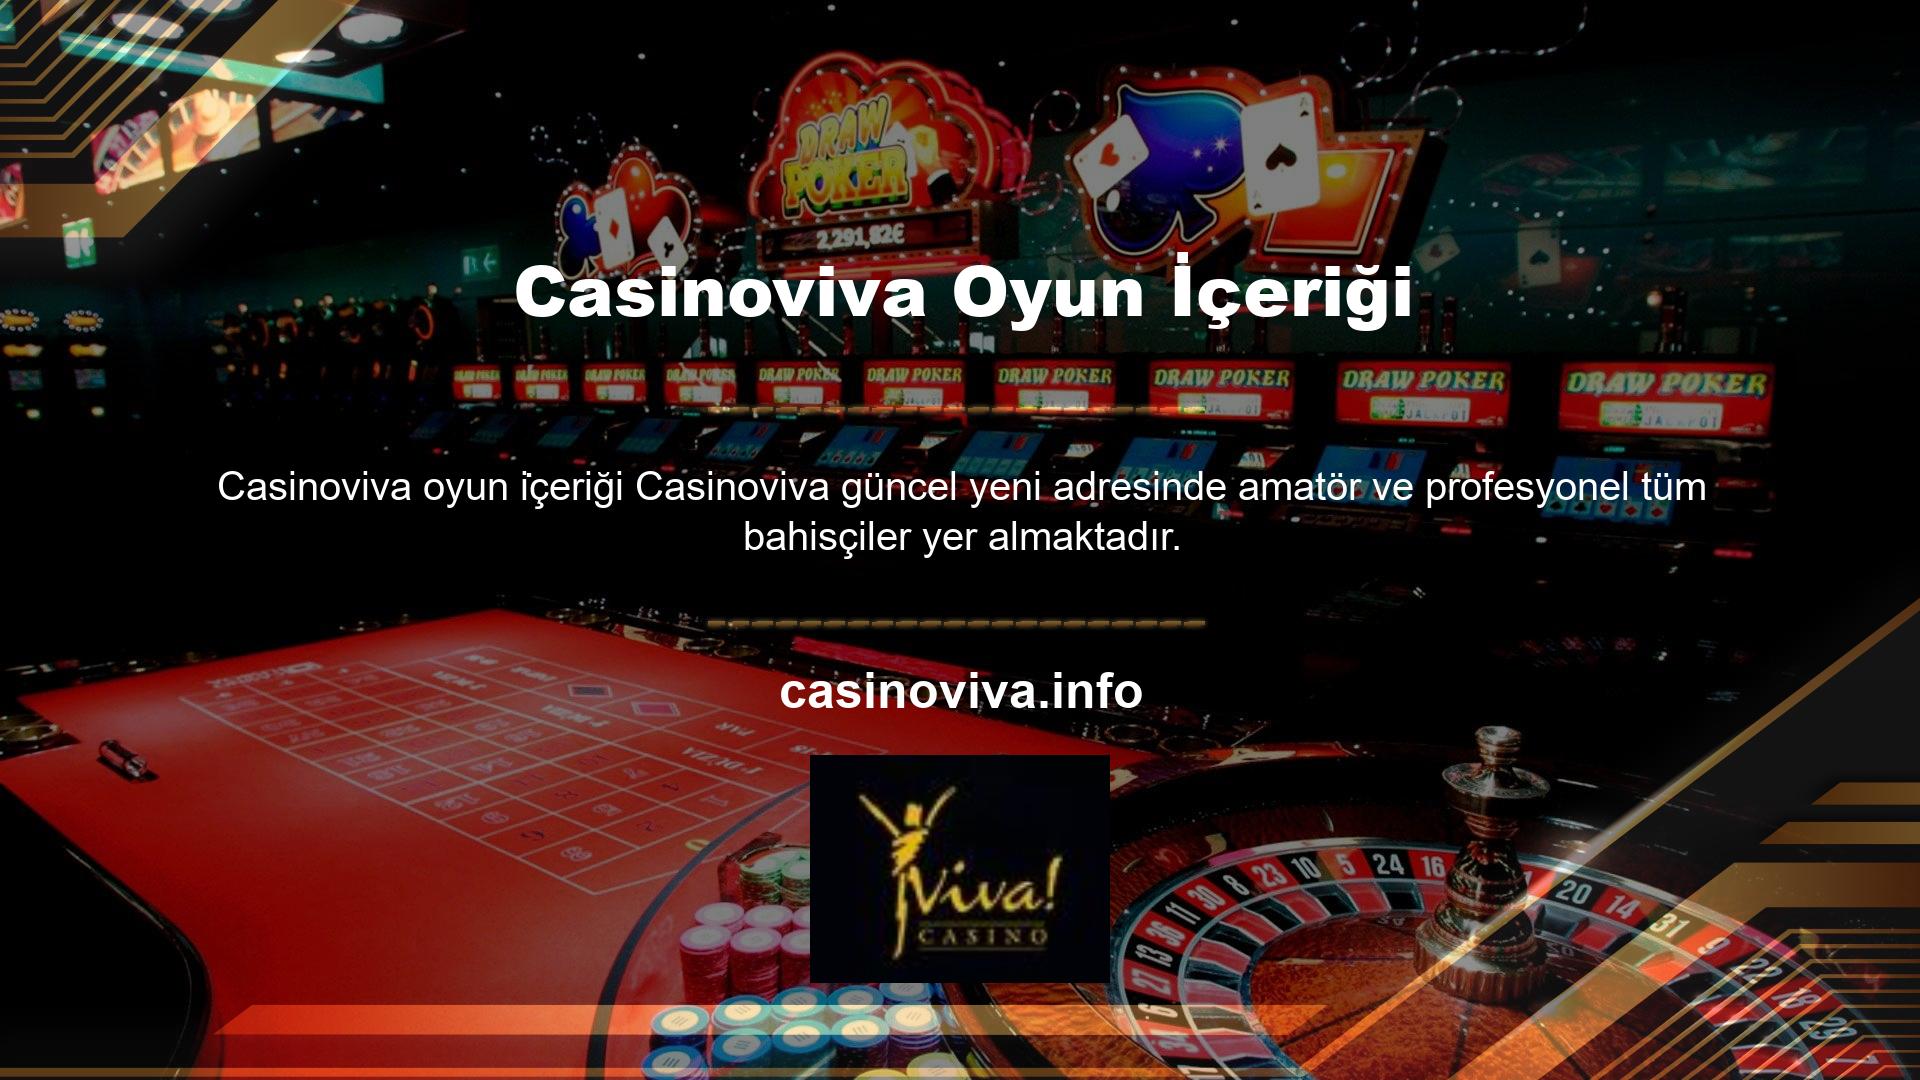 Kaliteli ve güvenilir hizmet ilkesine sadık kalan Casinoviva, üyelerine yeni bir giriş adresi sunmaktadır